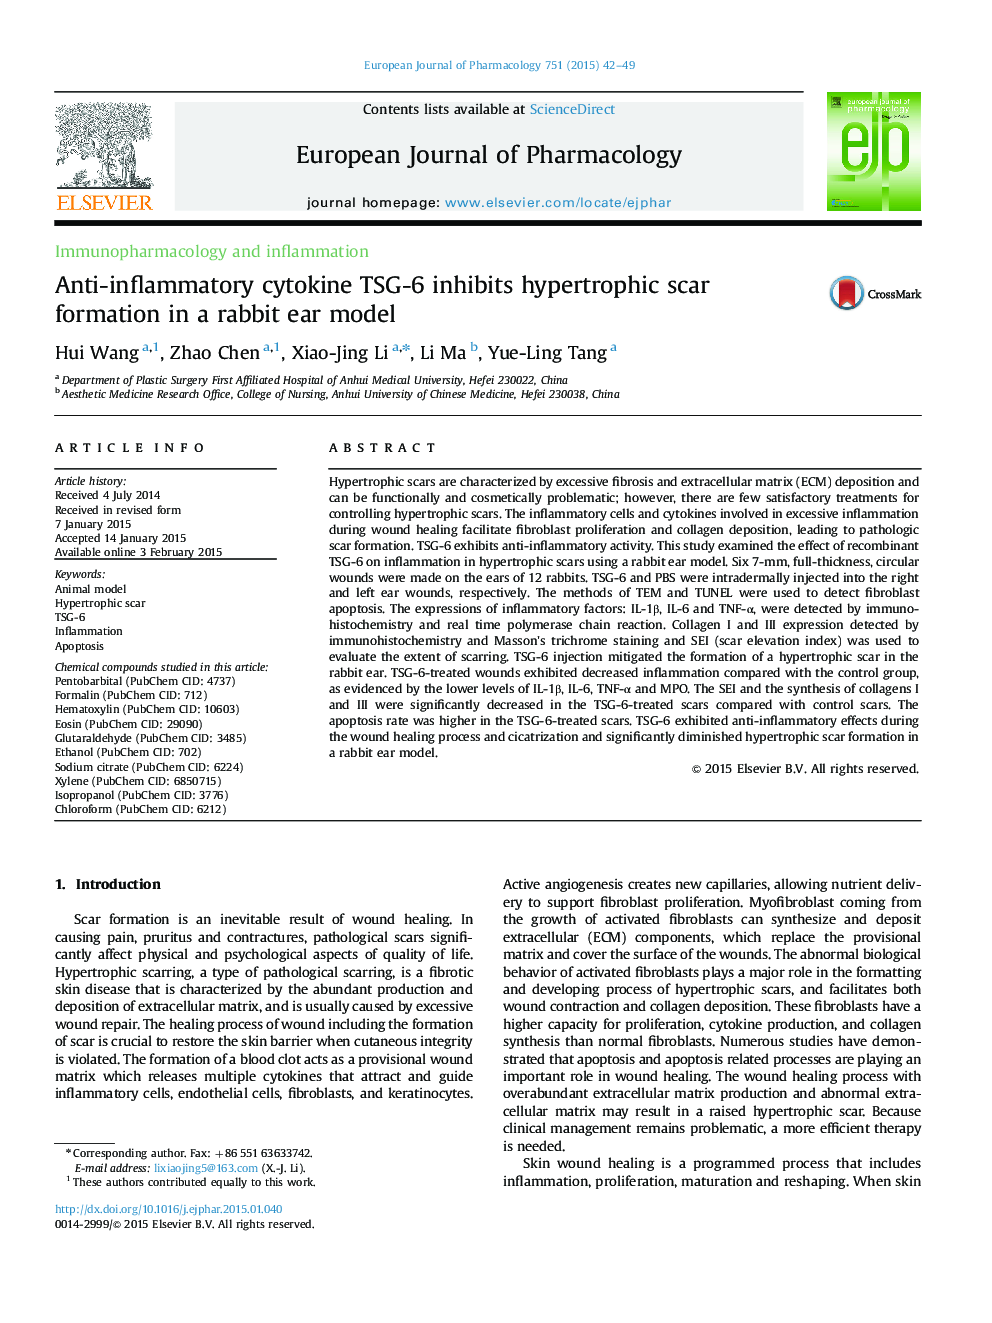 Anti-inflammatory cytokine TSG-6 inhibits hypertrophic scar formation in a rabbit ear model